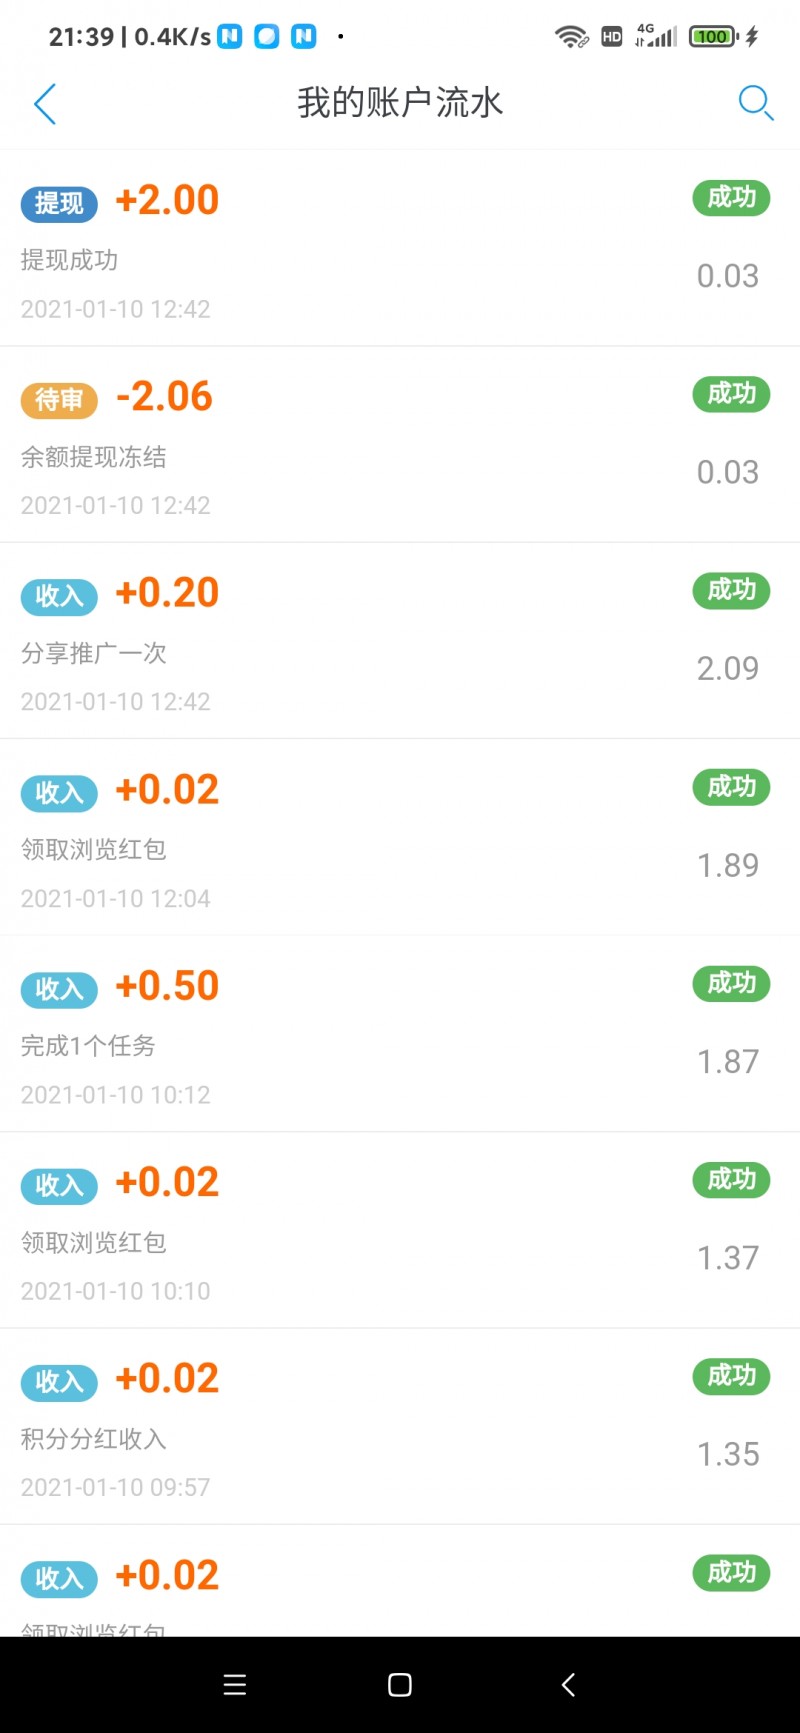 Screenshot_2021-11-25-21-39-09-658_com.quxianzhuan.wap